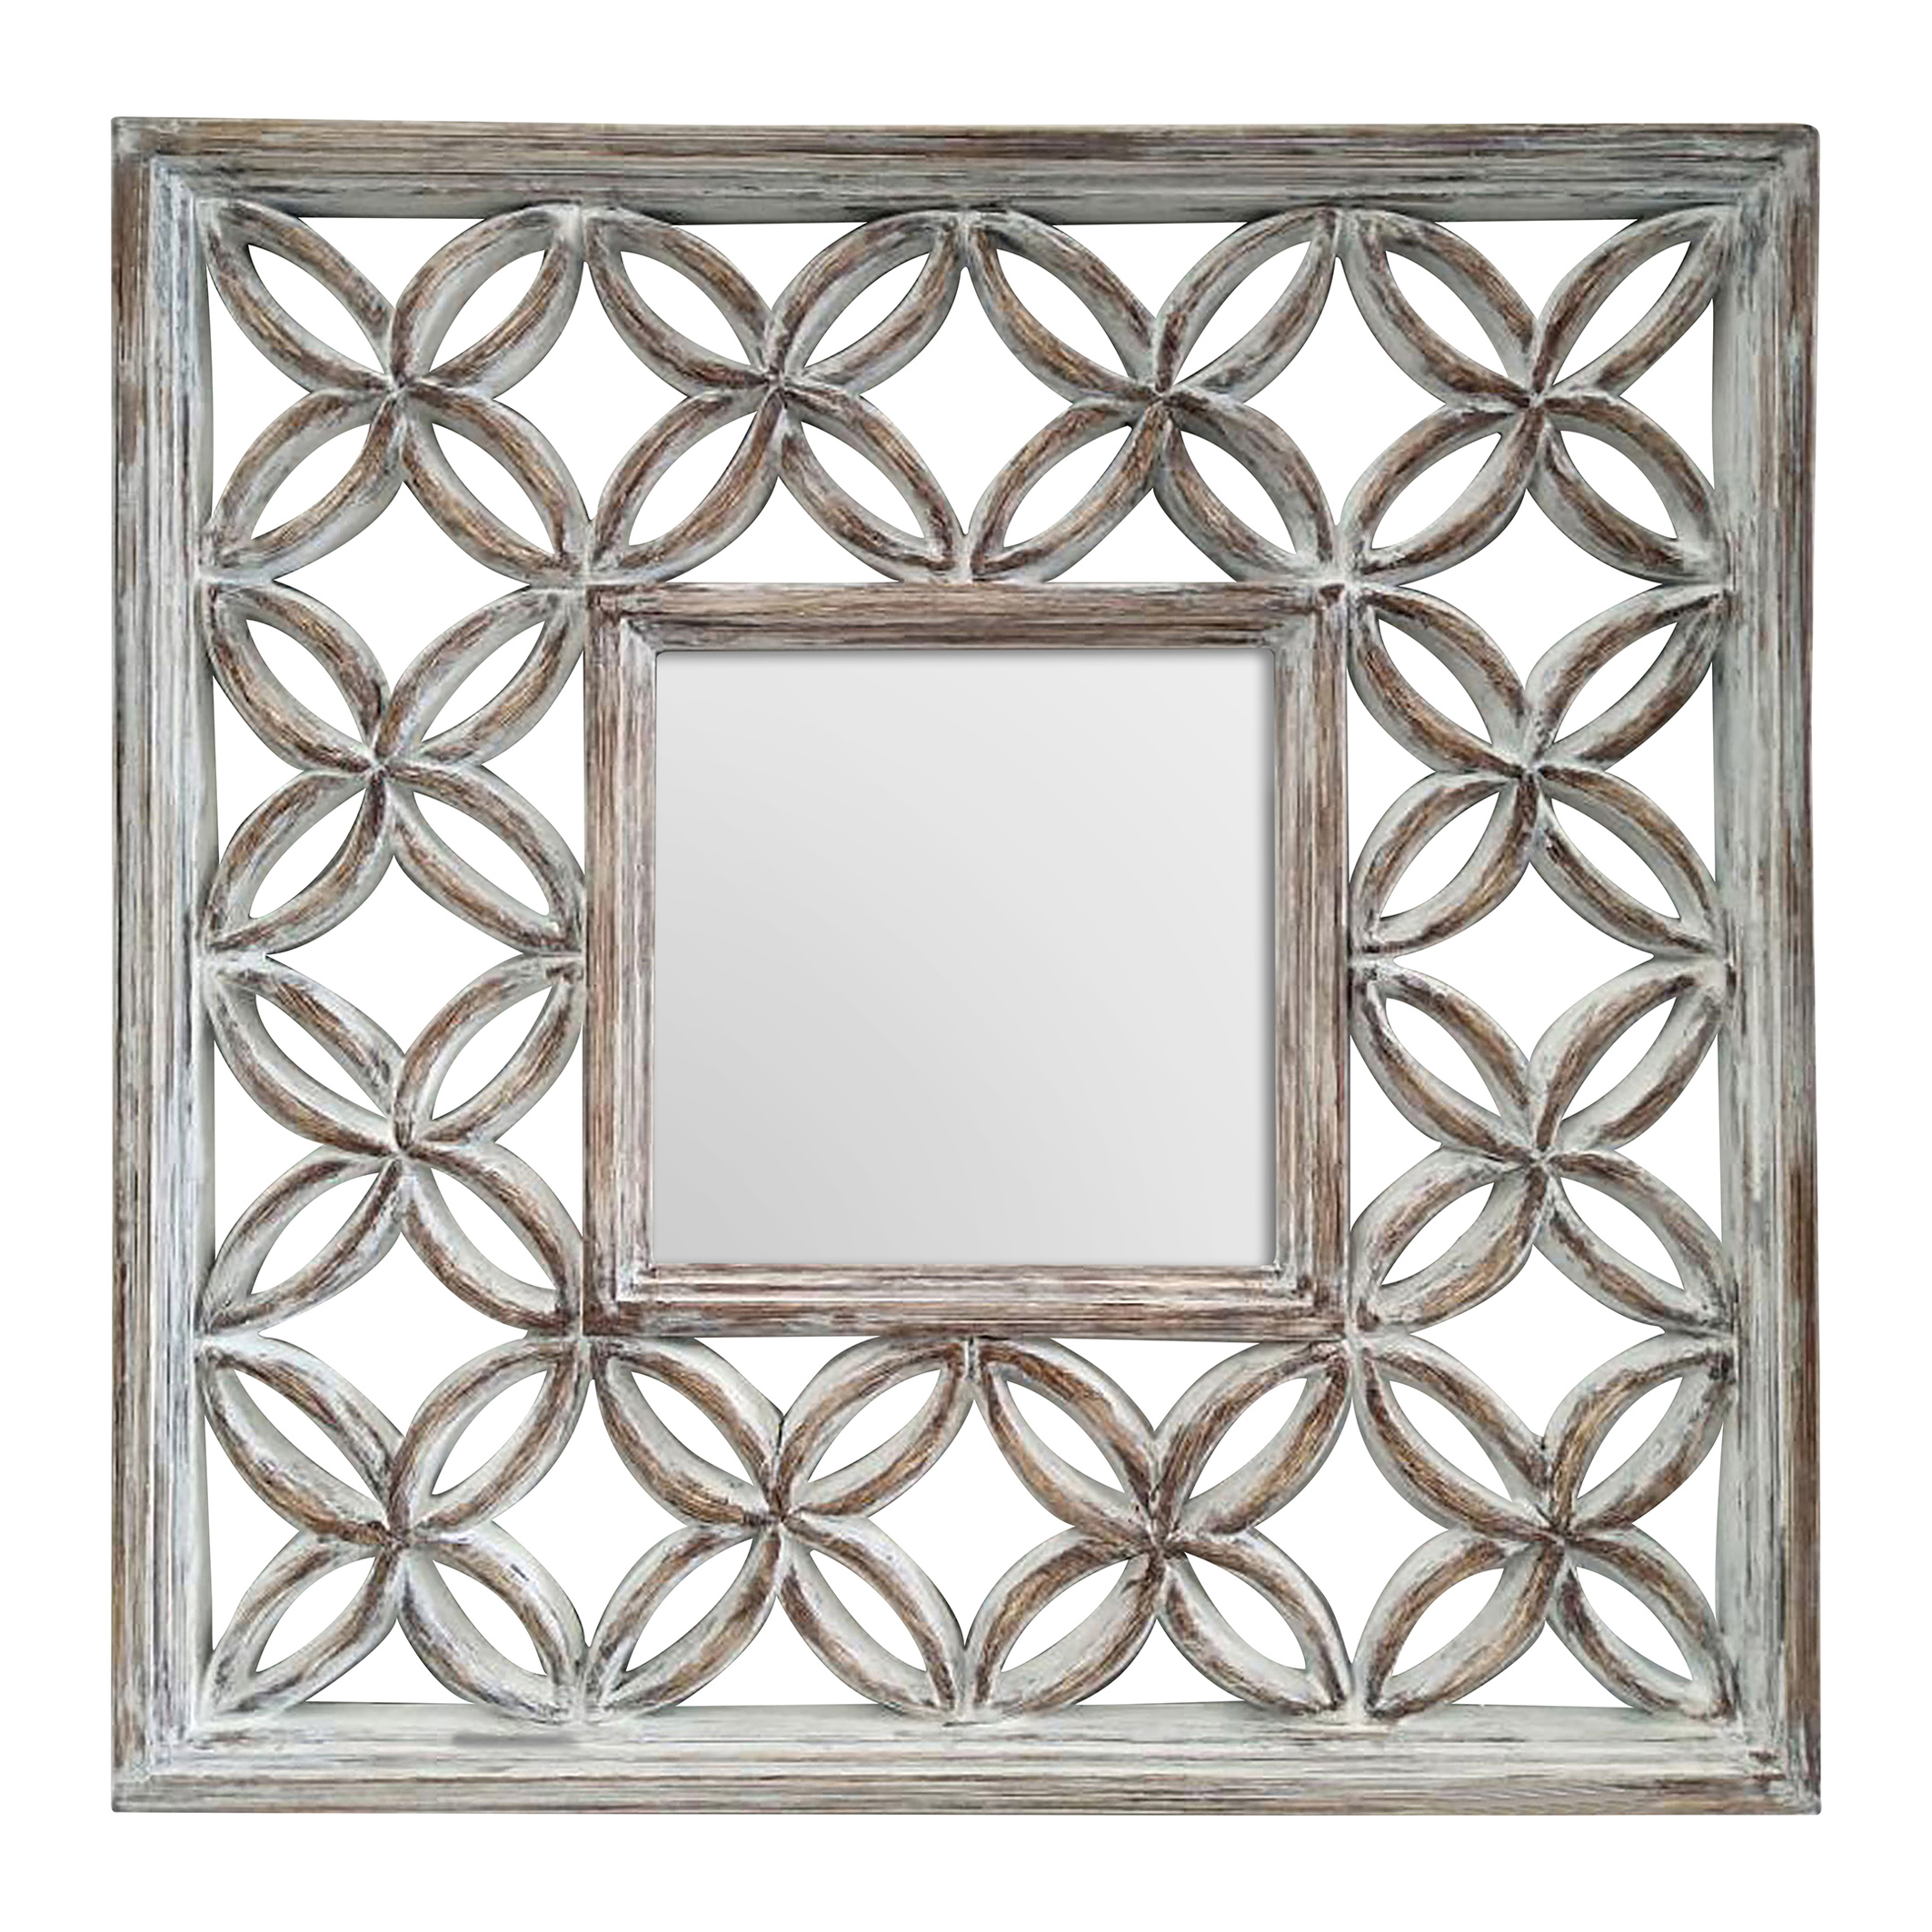 88cm Square Wall Mirror In Antique, Square Silver Mirror Uk